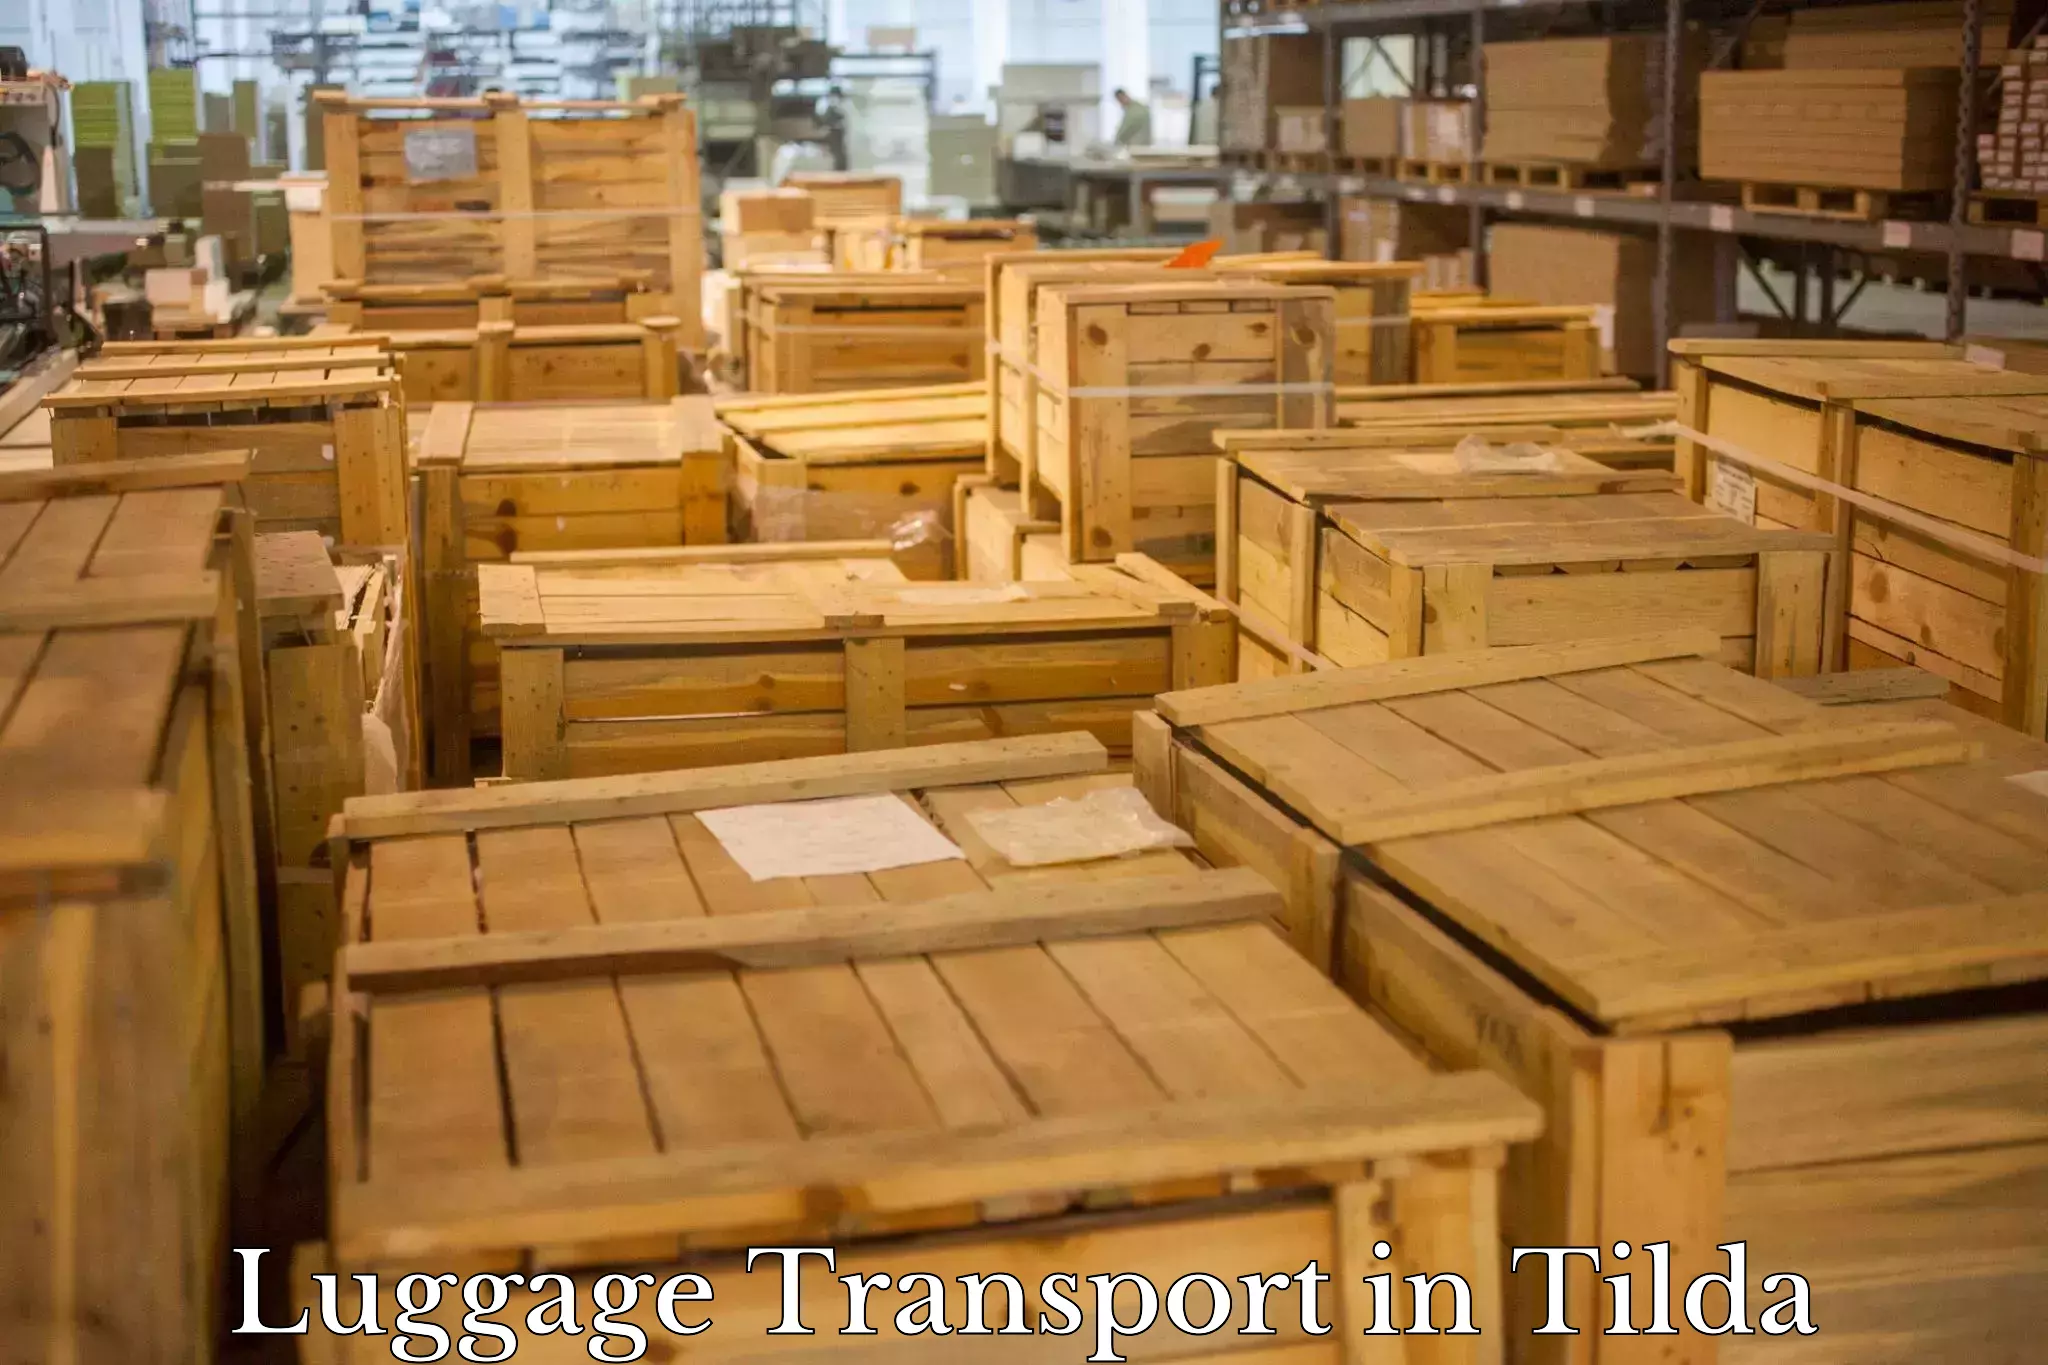 Baggage transport management in Tilda